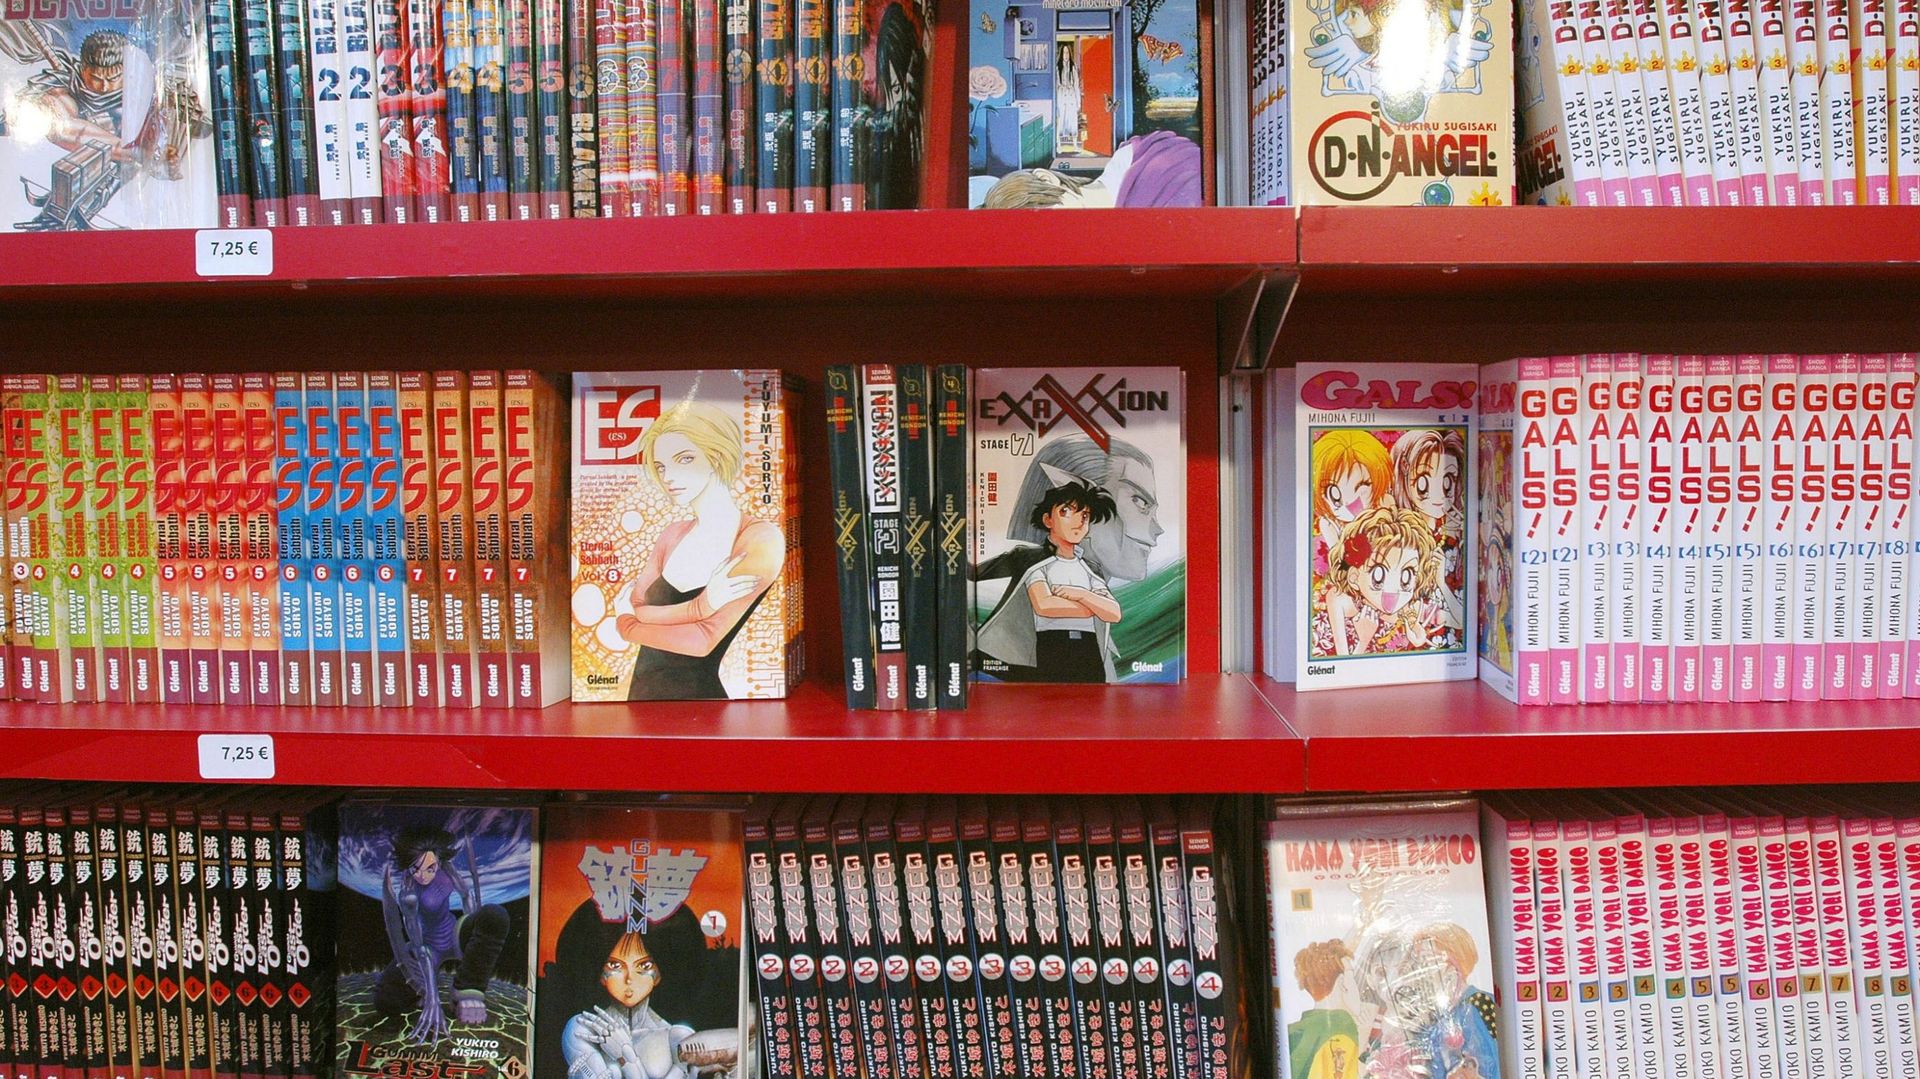 Les mangas, ces BD japonaises parfois violentes, ont fait exploser les ventes de livres ces deux dernières années chez nous, en particulier chez les adolescents.